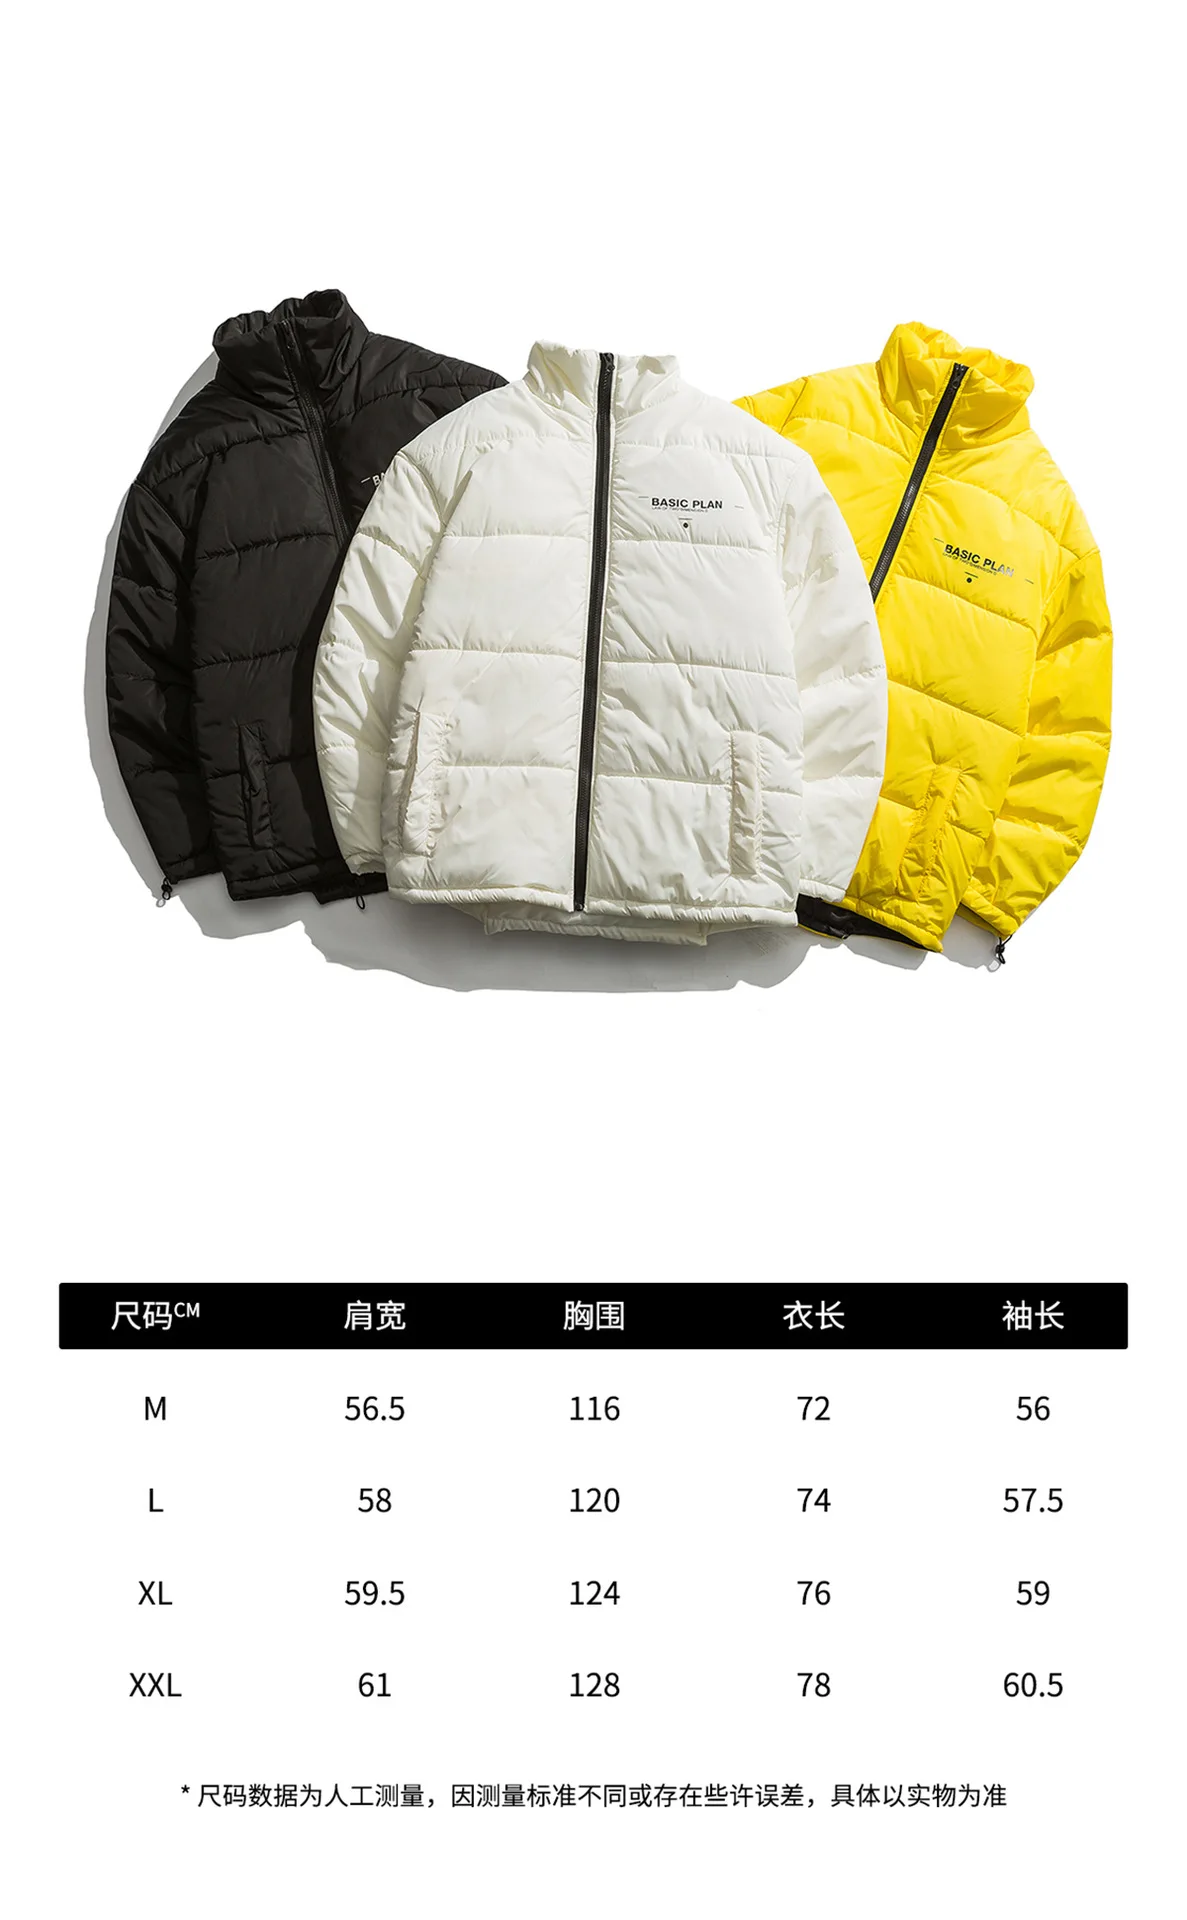 Luoye luo ye зимняя новая стильная оригинальная разноцветная рабочая одежда с надписью в японском стиле Повседневная хлопковая стеганая куртка M861